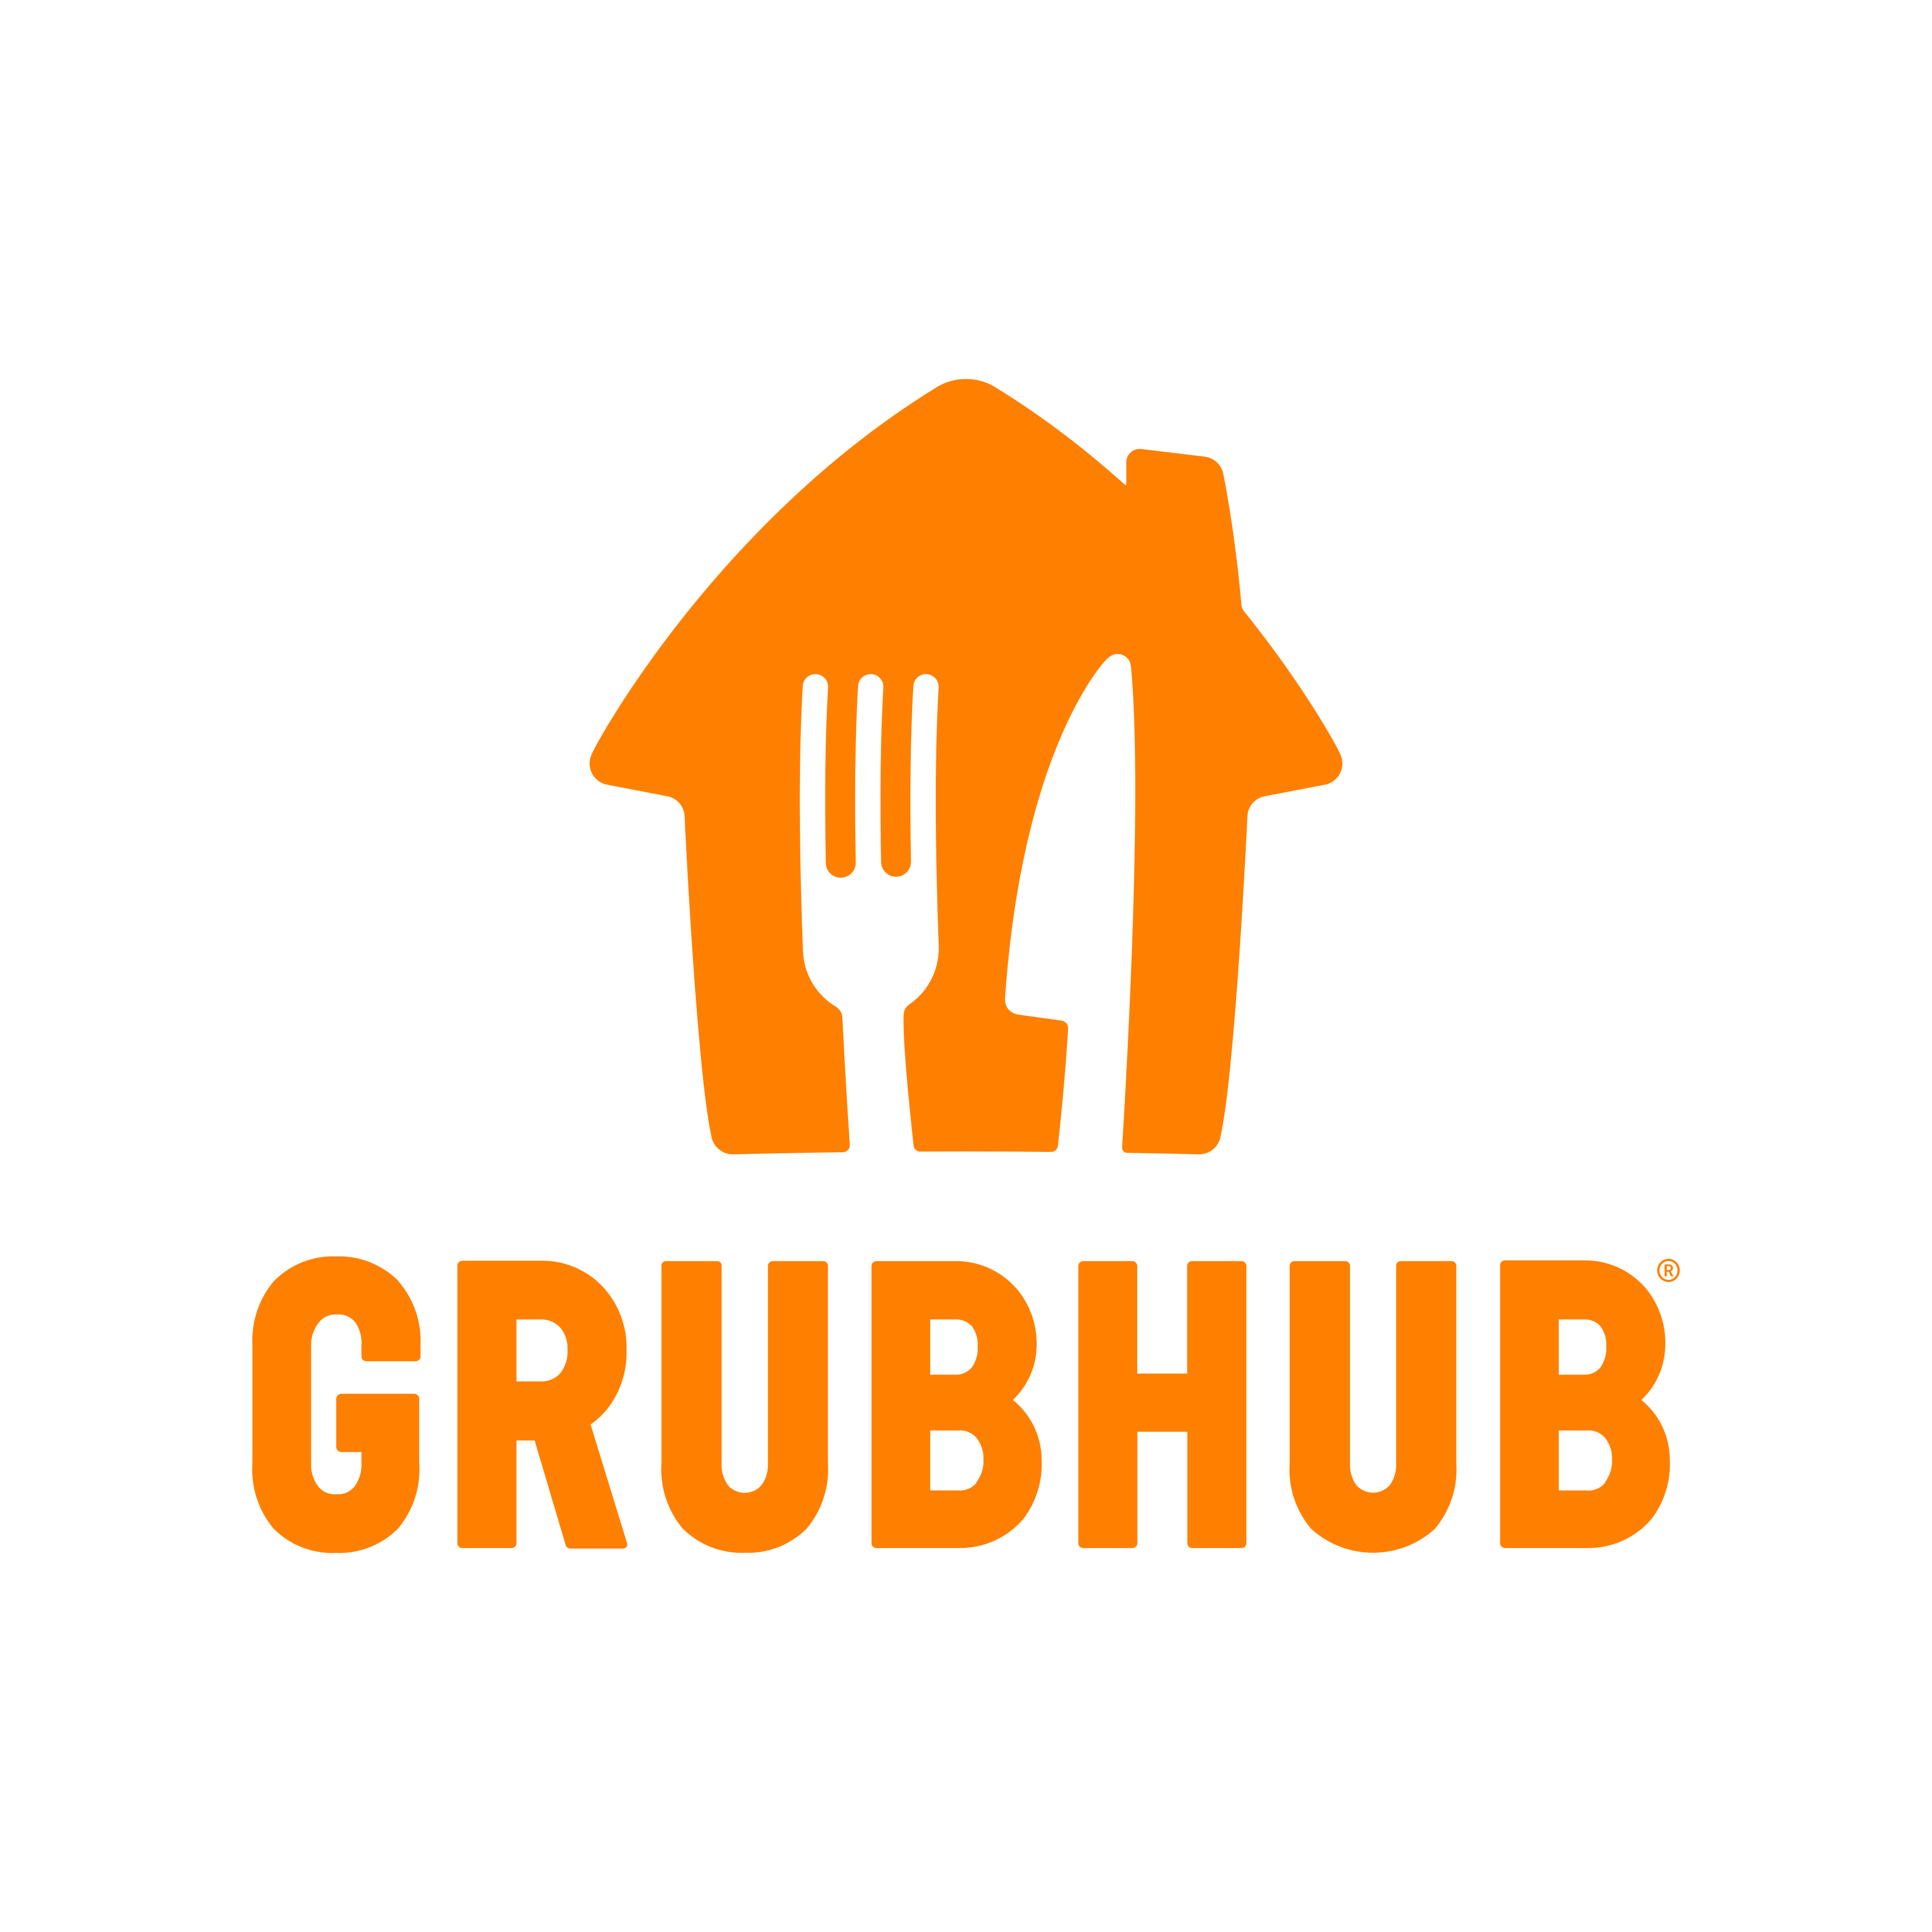 grubhub logo 0 - GrubHub Logo